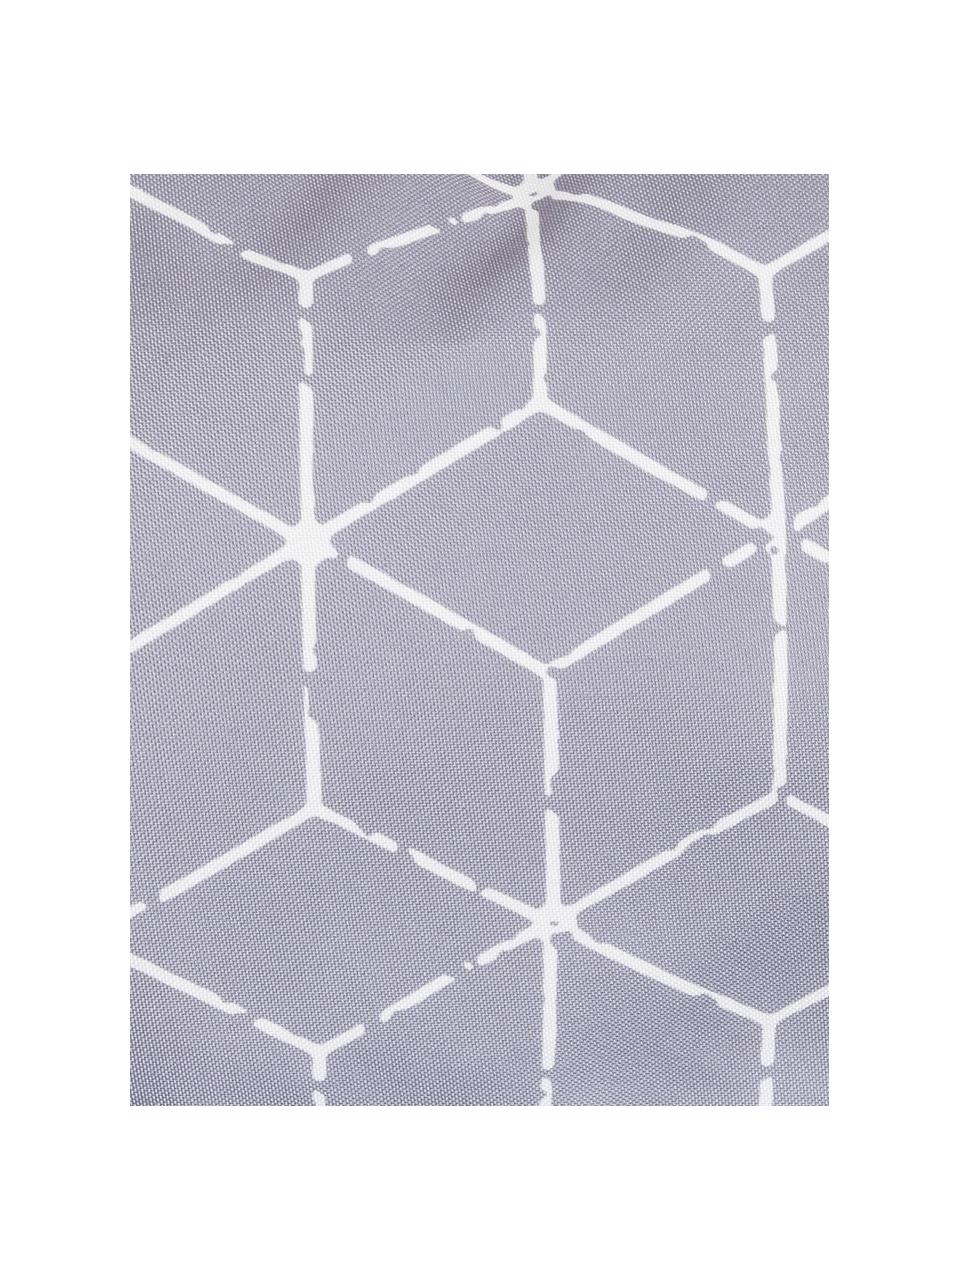 Outdoor kussen Cube met grafisch patroon in grijs/wit, met vulling, 100% polyester, Grijs, wit, 30 x 50 cm